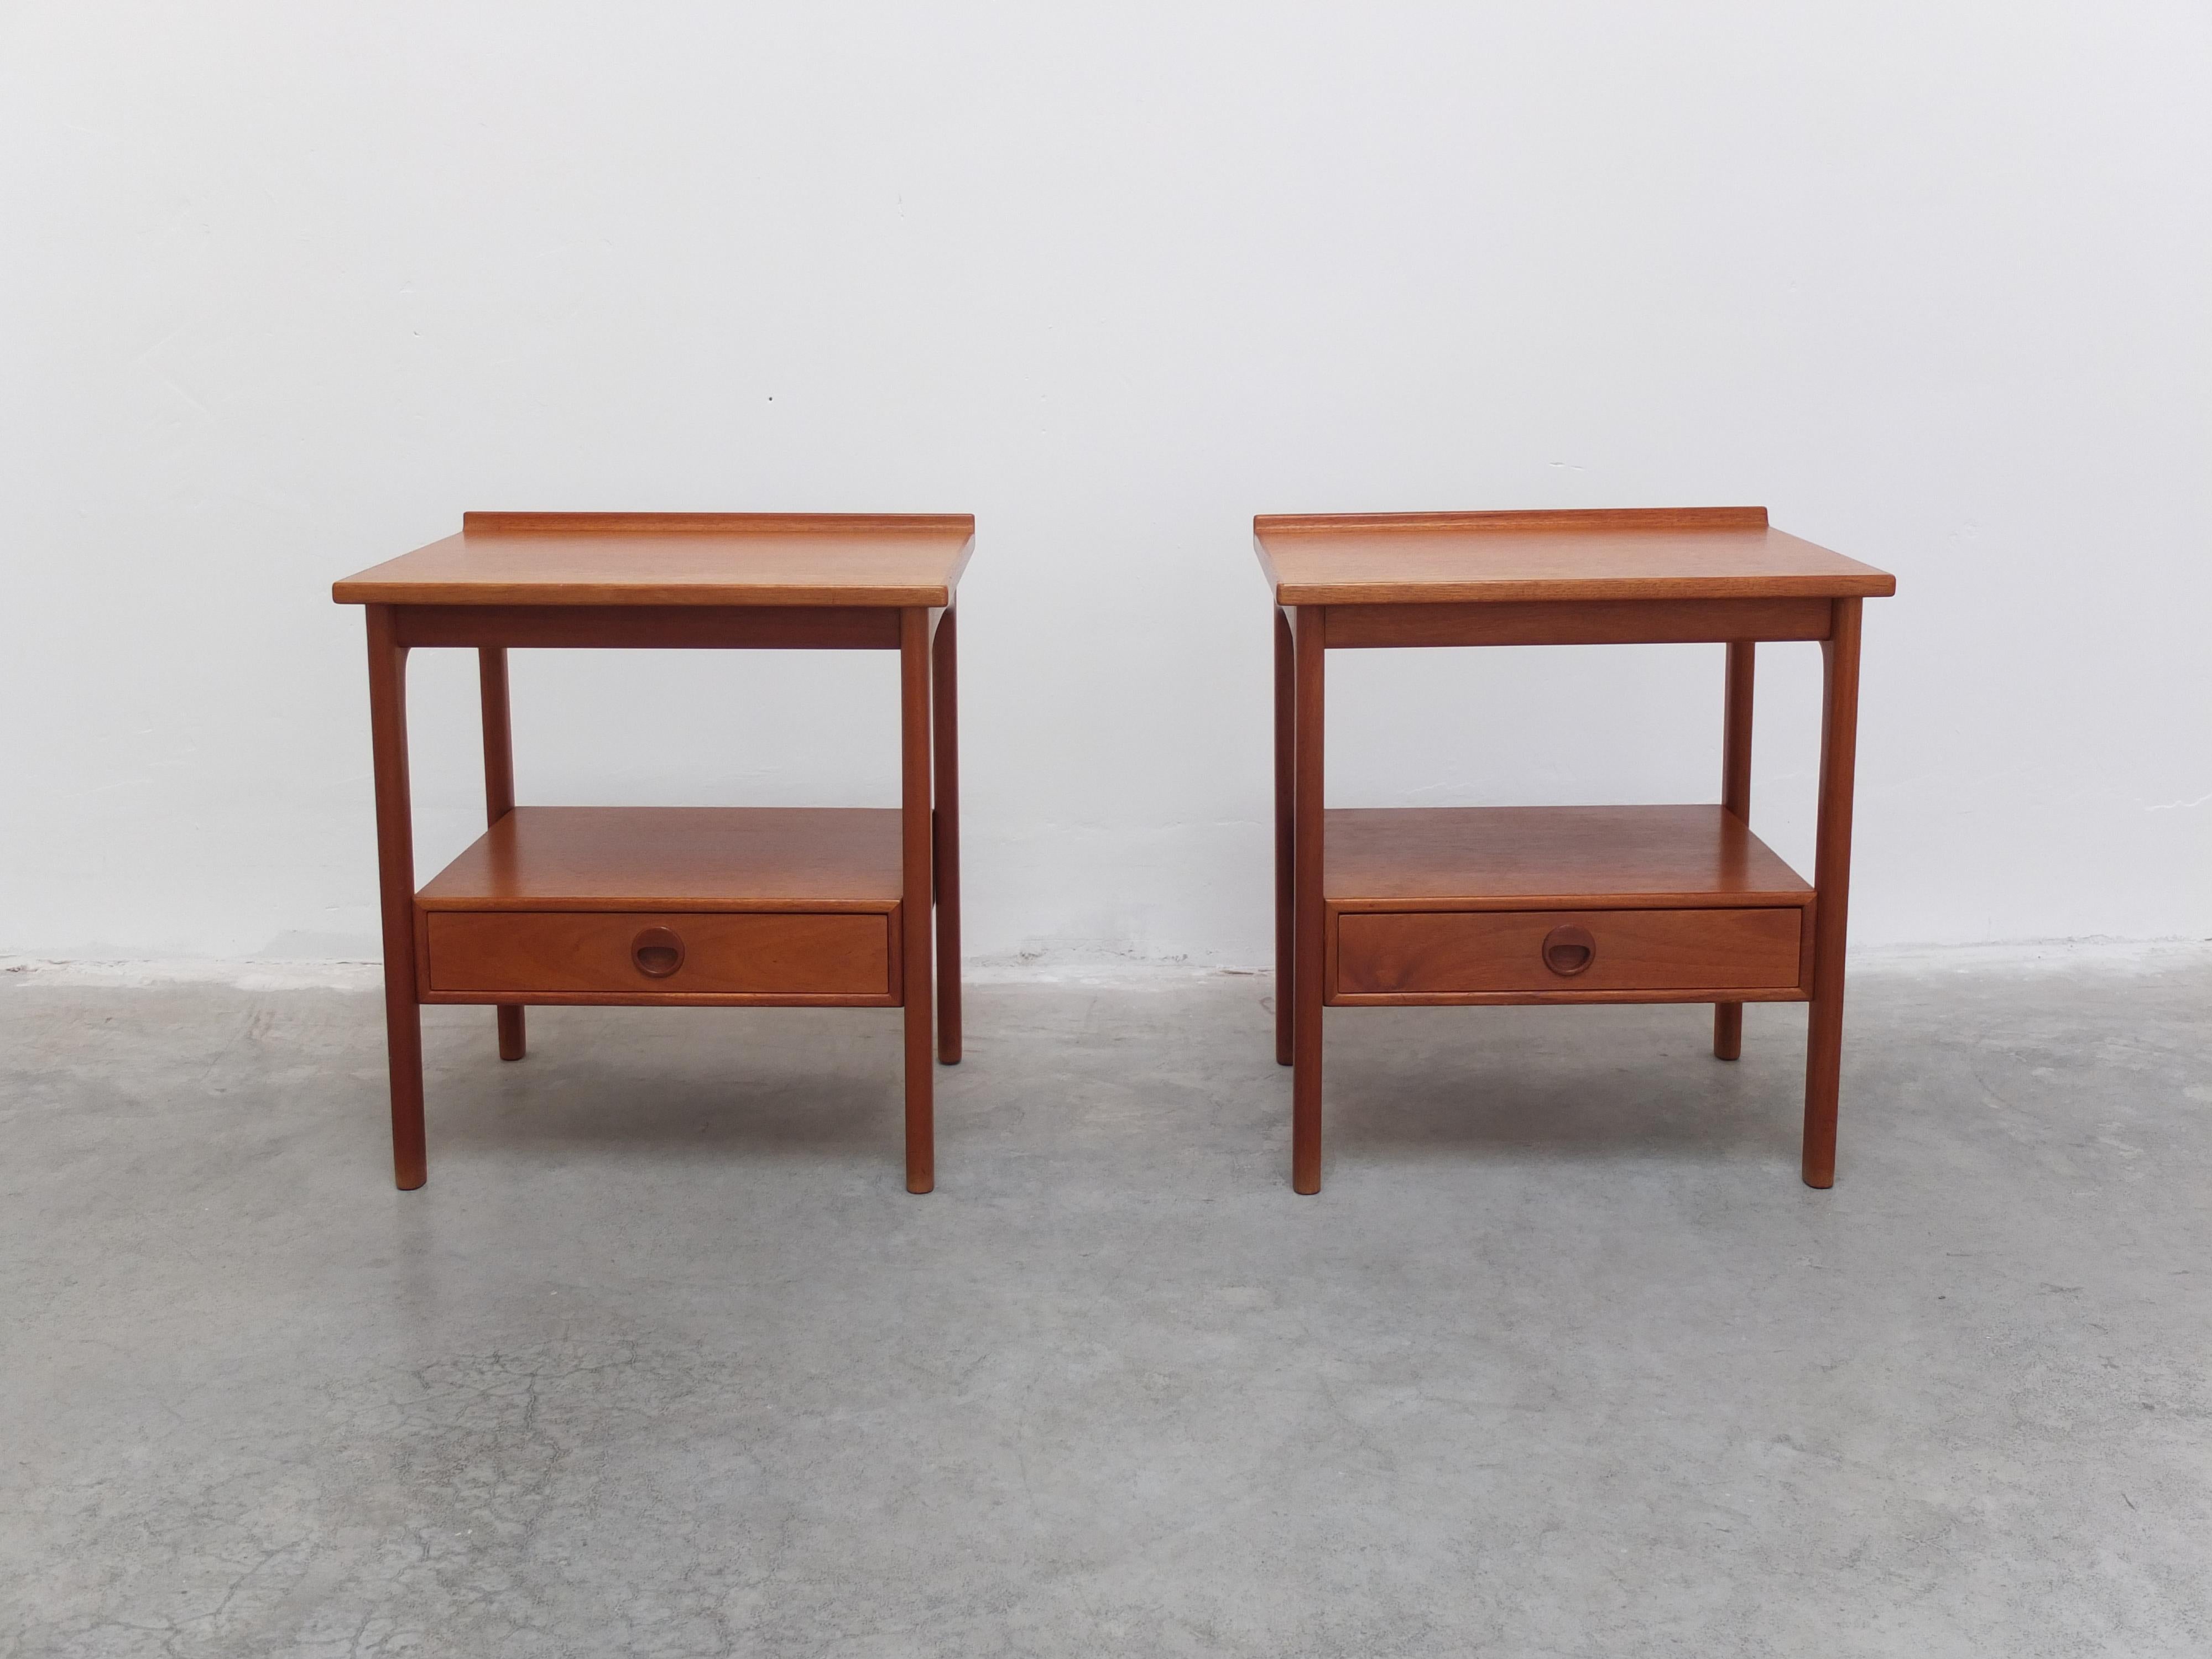 Merveilleuse paire de tables d'appoint 'Frisco' conçues par Folke Ohlsson pour Tingstrøms dans les années 1960. Ils sont fabriqués en teck massif et présentent un niveau de finition très élevé, avec un bord surélevé sur le dessus et un tiroir en